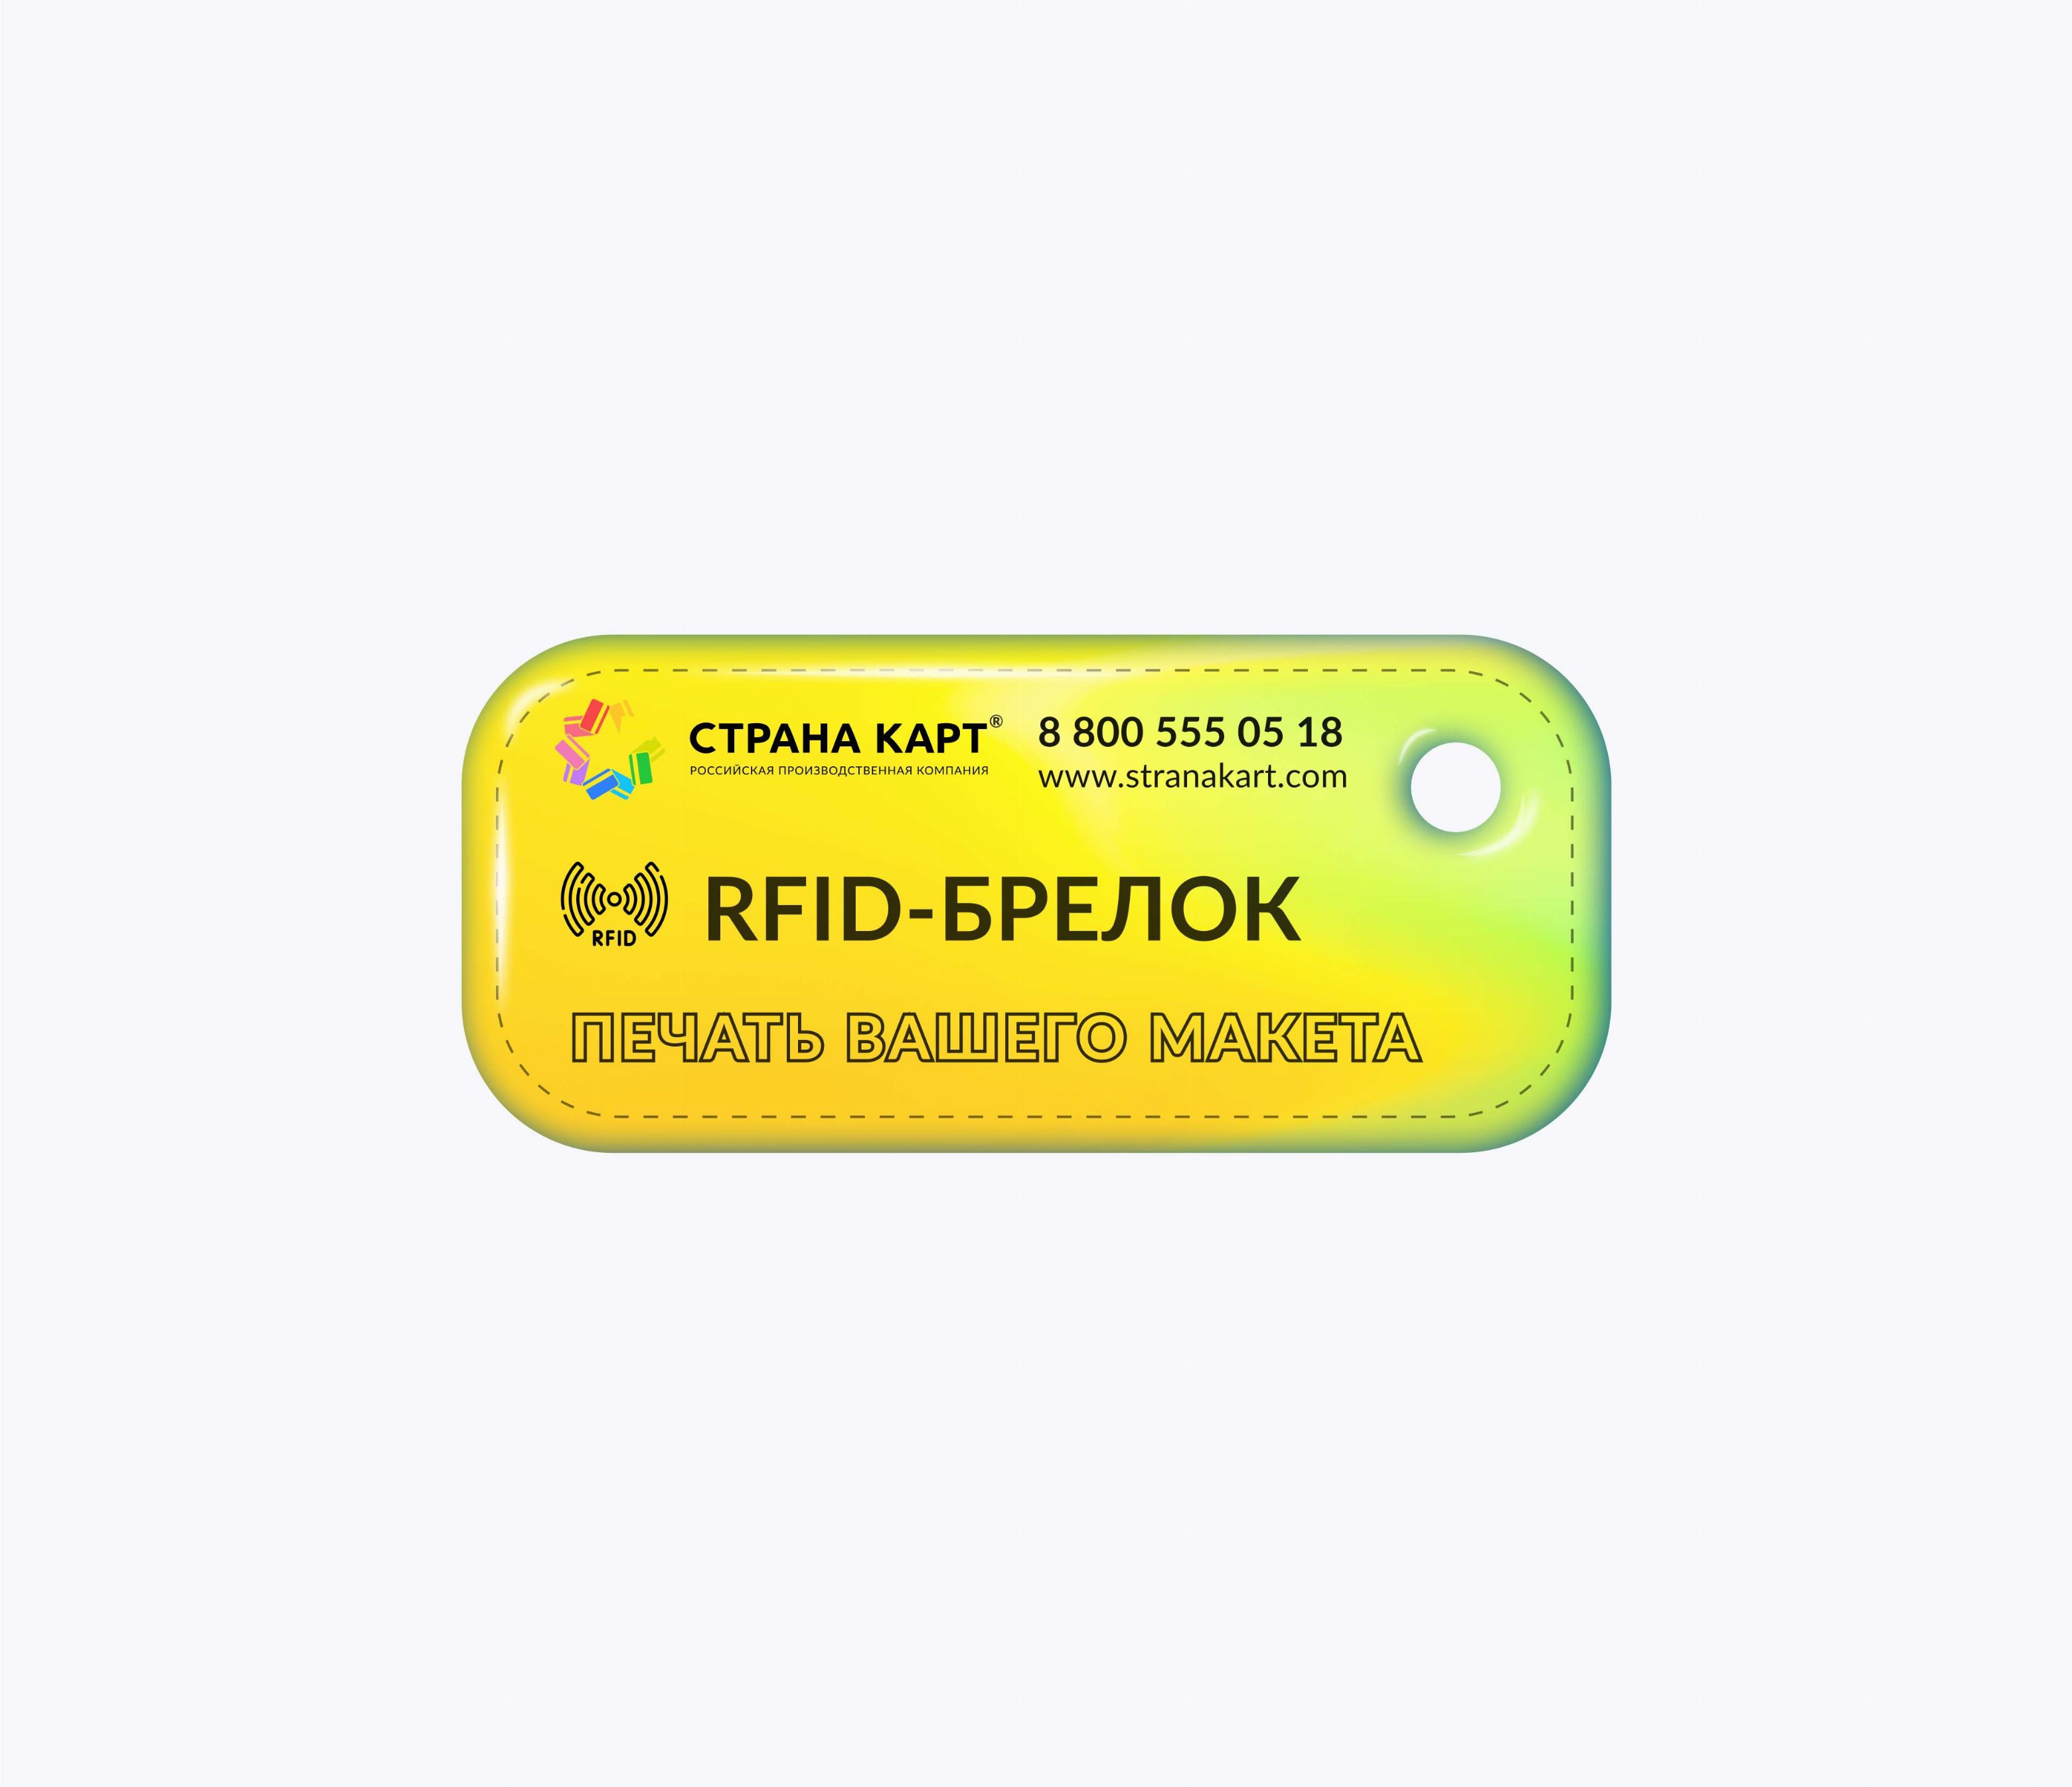 Прямоугольные мини RFID-брелоки NEOKEY® с чипом NXP MIFARE Classic 1k + EM-Marine Дуальные RFID-брелоки NEOKEY® с двумя чипами NXP MIFARE Classic 1k + EM-Marine и вашим логотипом